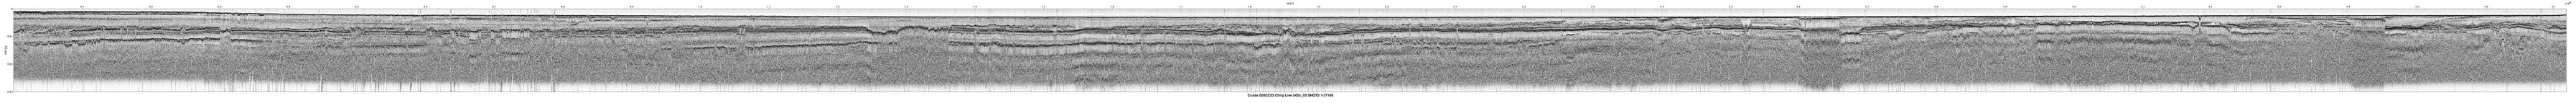 00SCC02 b00c_05 seismic profile image